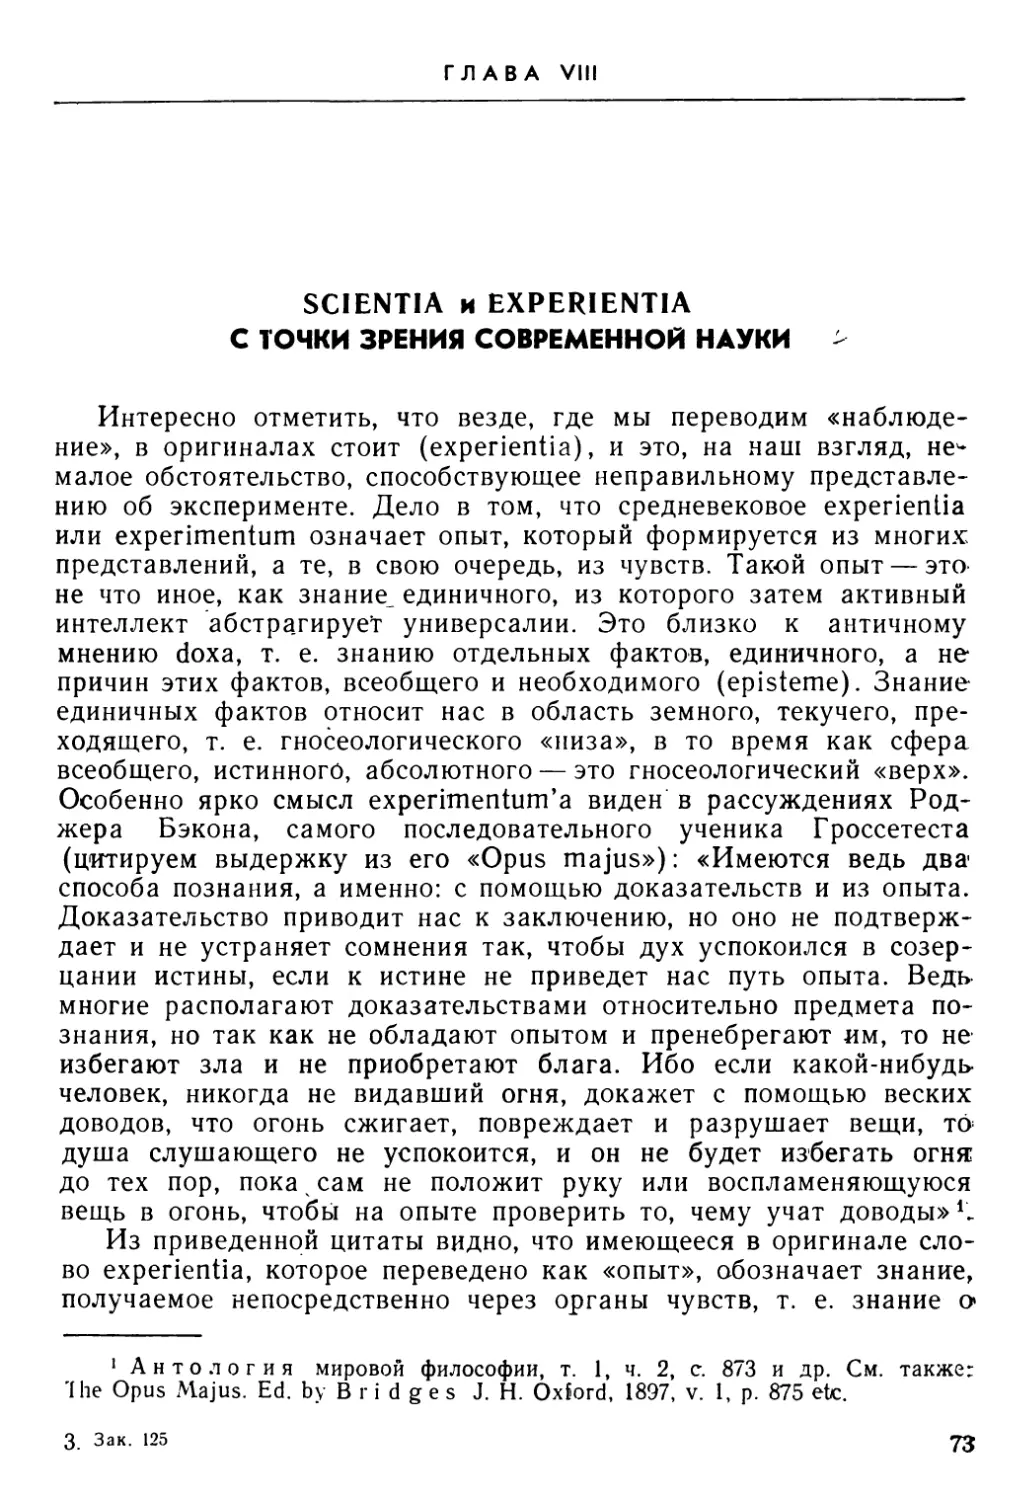 Глава VIII. Scientia и experientia с точки зрения современной науки